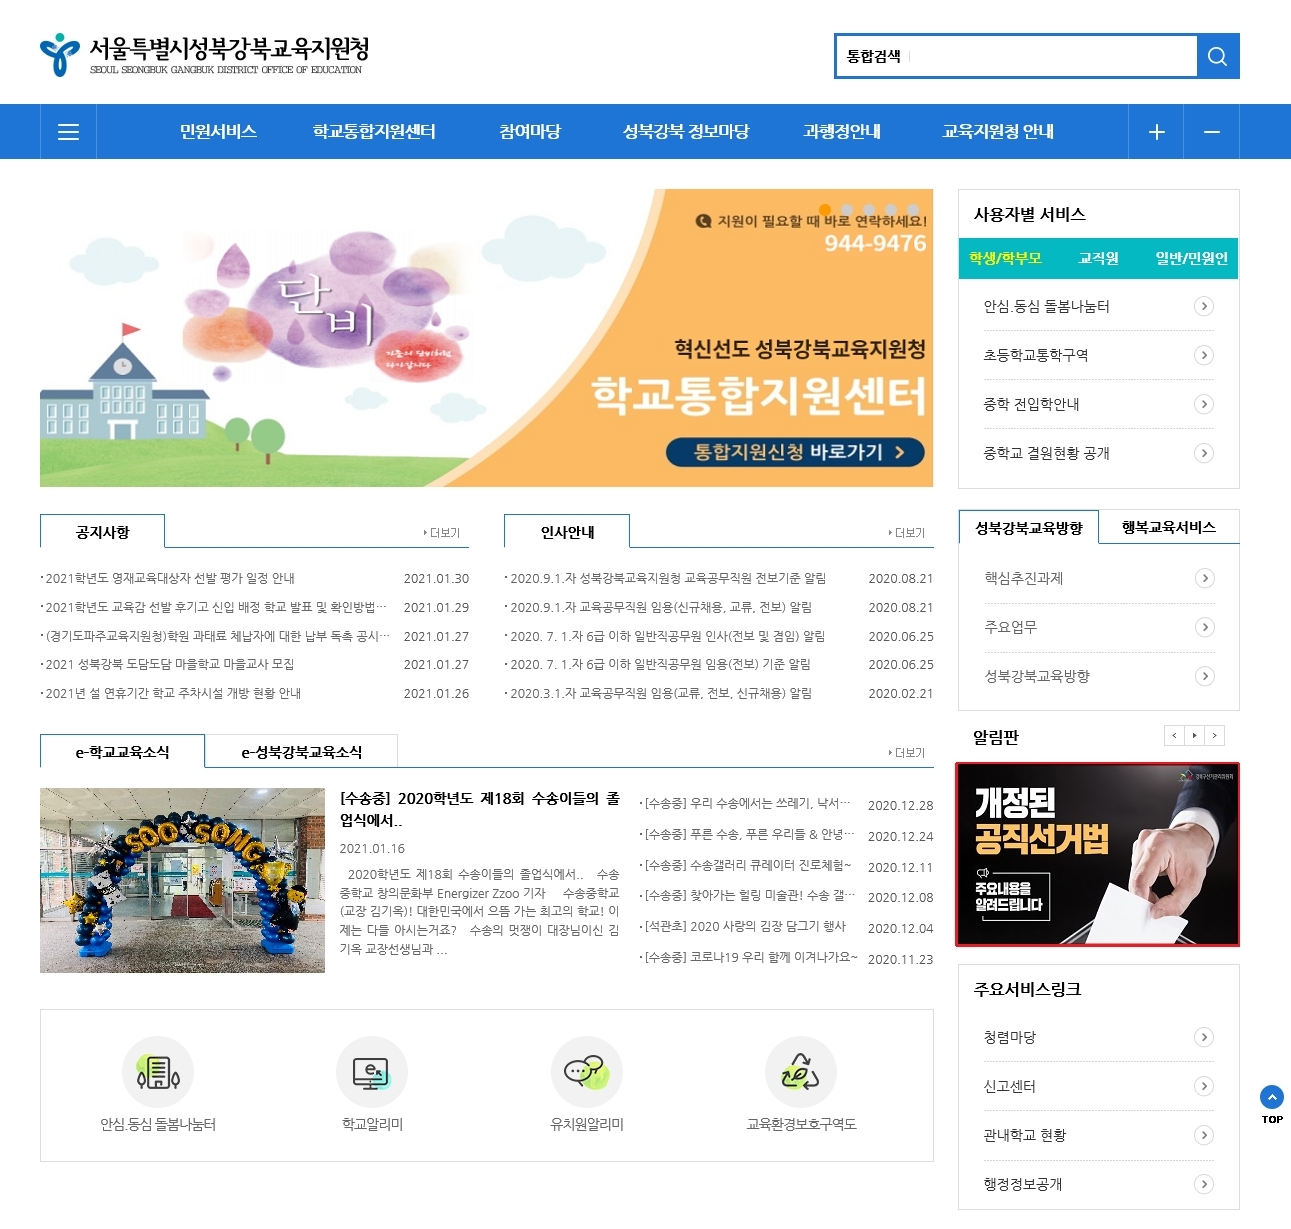 강북구선거관리위원회는 공직선거법 개정 주요내용 안내 배너를 서울특별시성북강북교육지원청 홈페이지에 게시하였습니다.